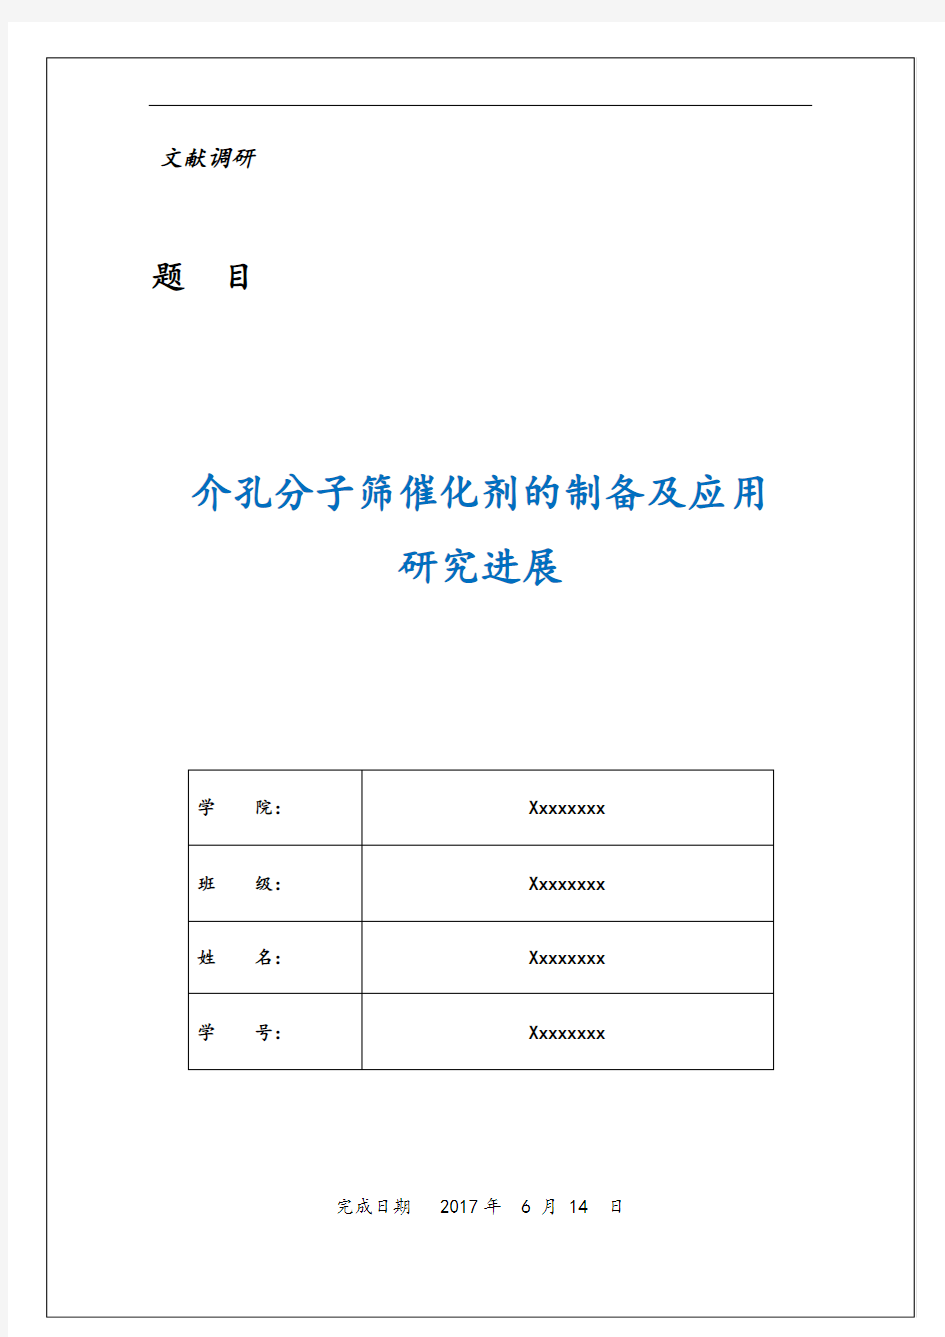 湘潭大学文献检索课程期末作业